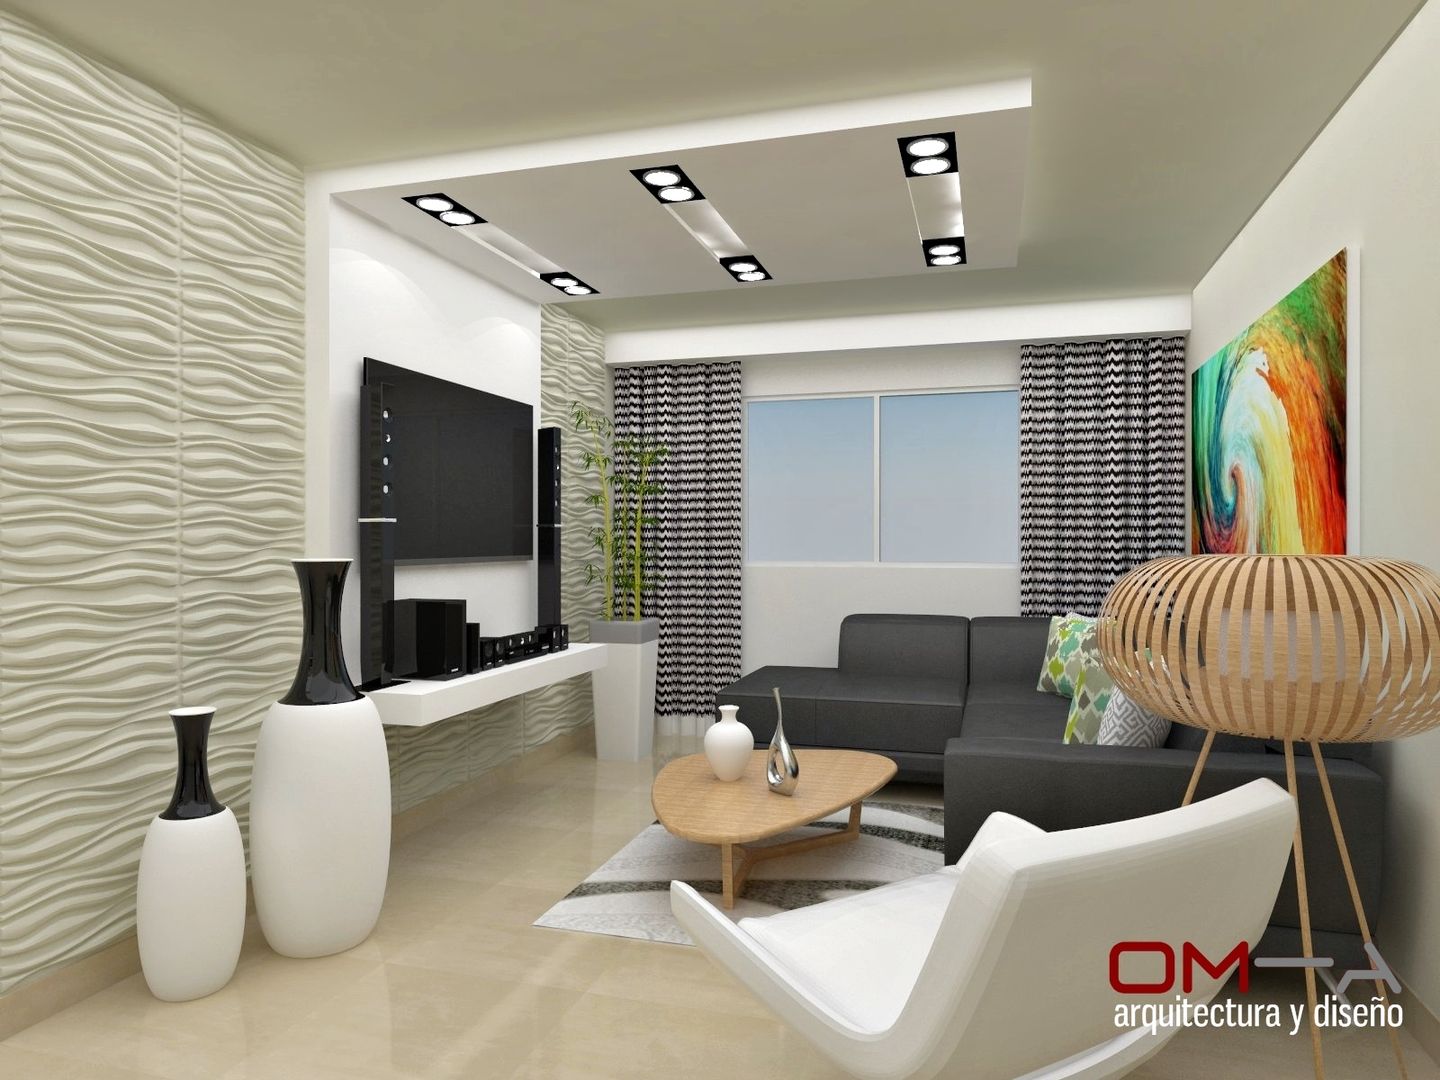 Diseño interior en apartamento , om-a arquitectura y diseño om-a arquitectura y diseño モダンデザインの リビング